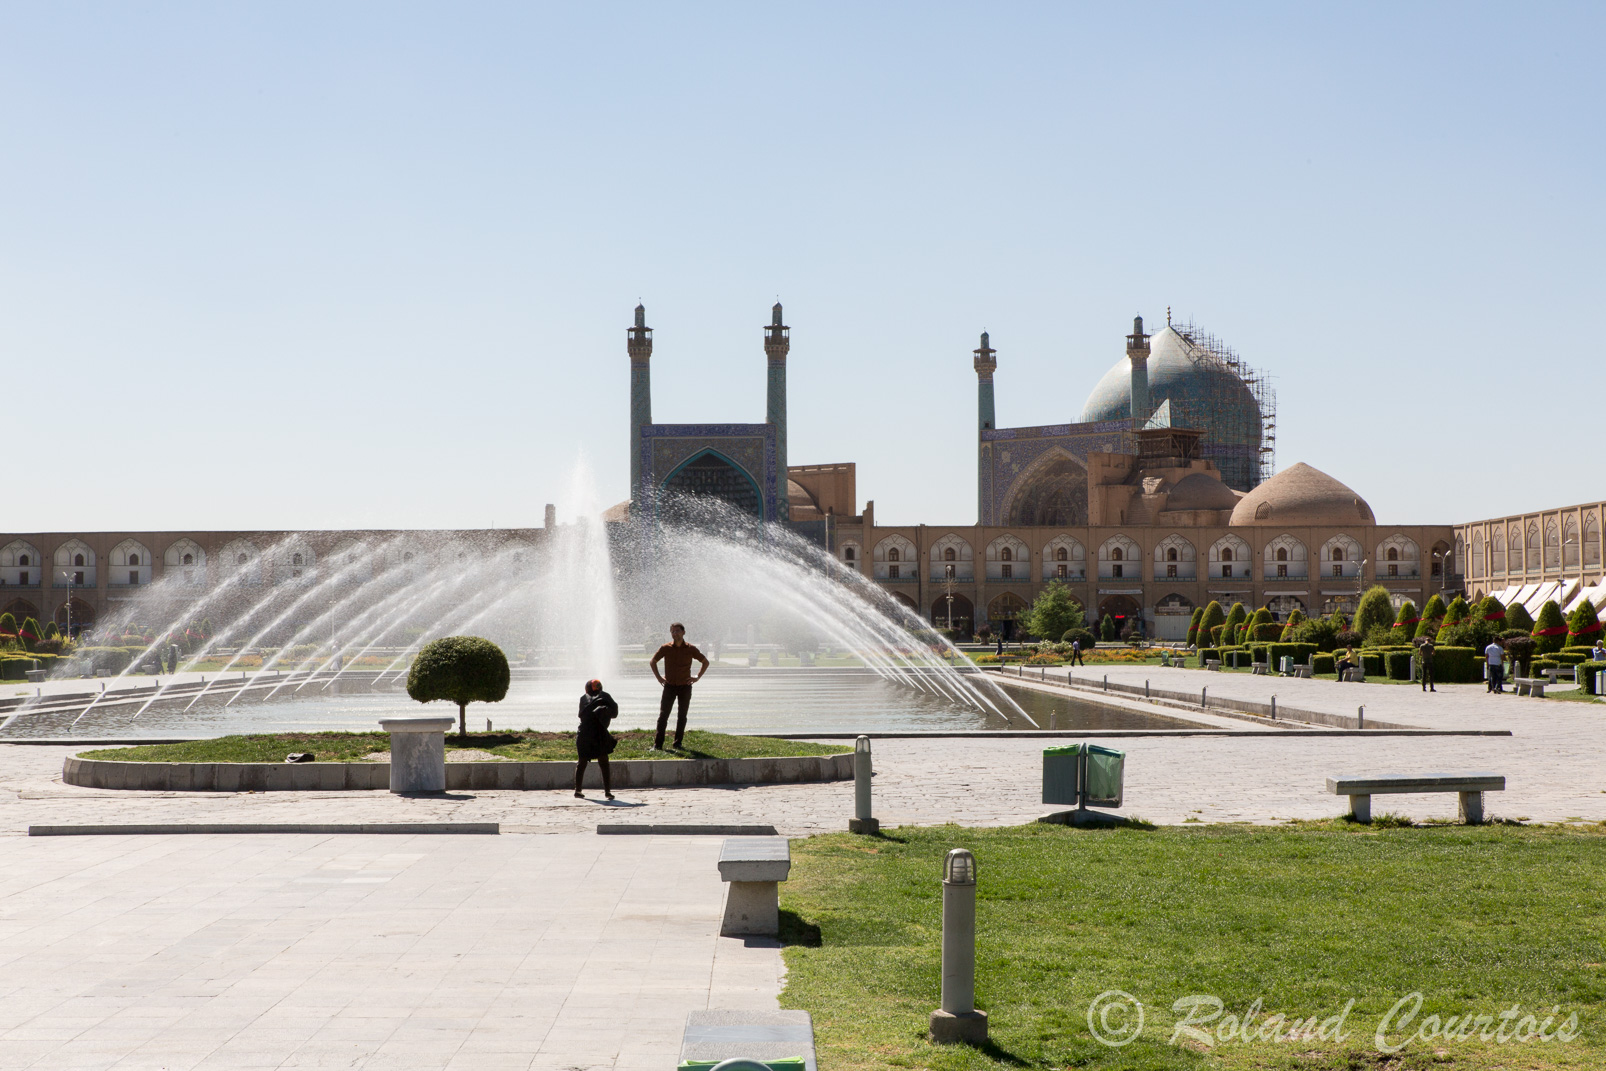 Place Royale (500 m sur 160 m) était le centre symbolique de la dynastie safavide et de son empire. Elle servait aux célébrations et aux fêtes, ainsi qu’aux grands tournois de polo. 
Au Sud la Mosquée du Roi.